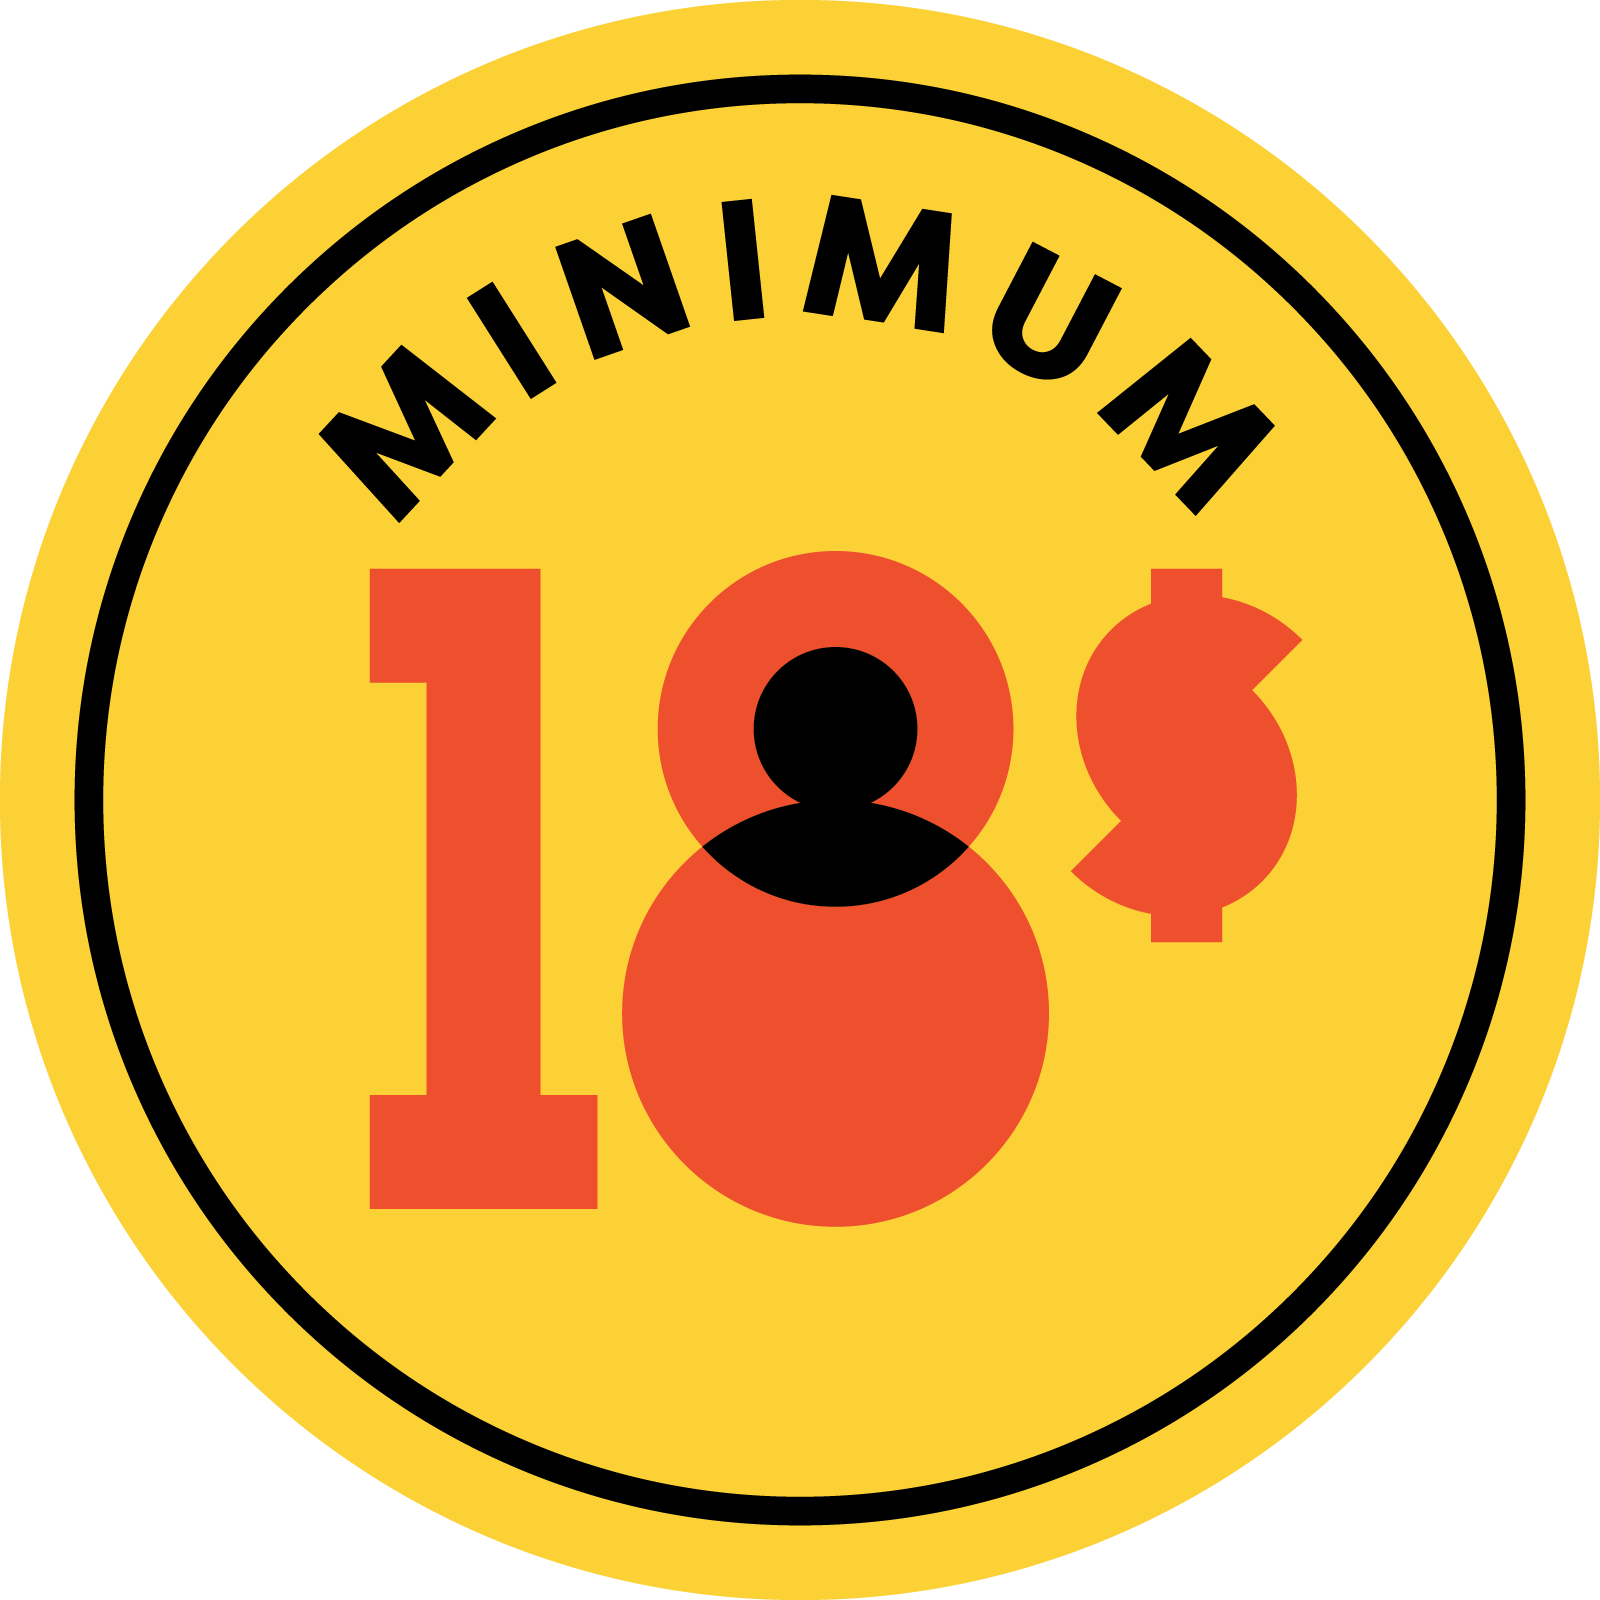 Image Minimum 18 $ | consensus du mouvement syndical et communautaire autour du salaire minimum